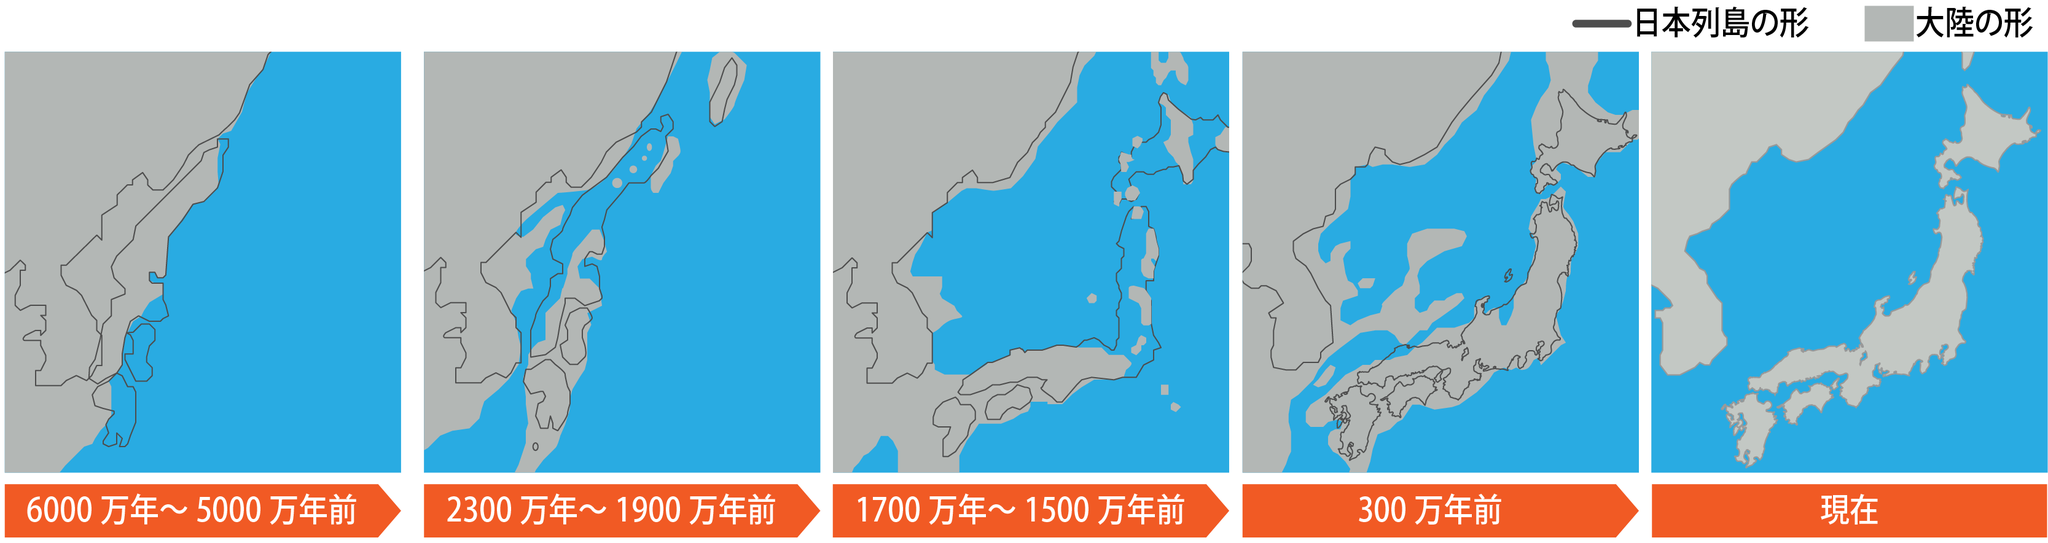 【図】日本列島形成のイメージ